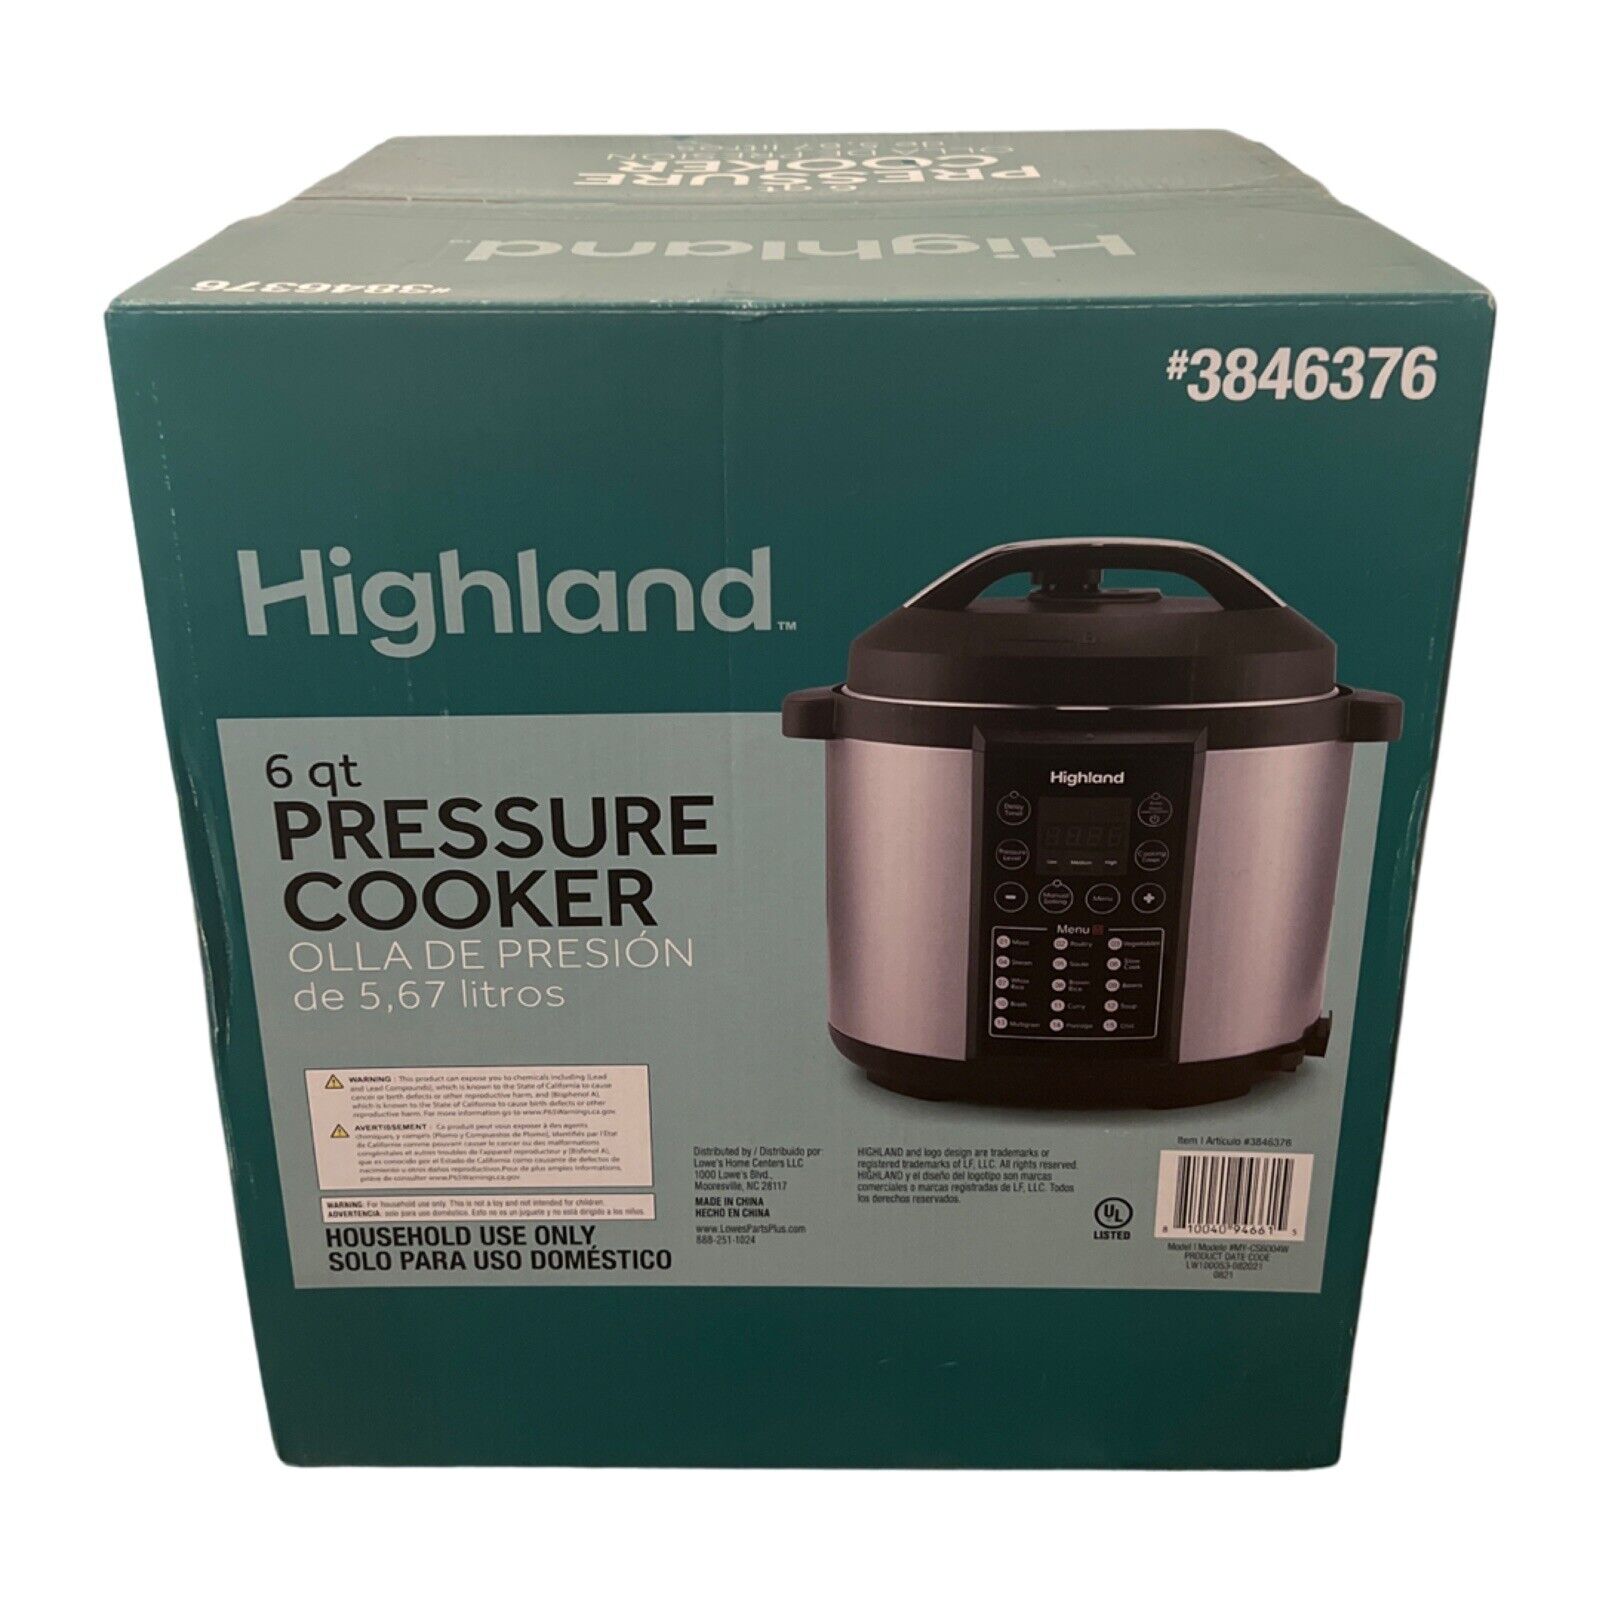 smokkel impliceren cocaïne Highland 6 QT 8 in 1 Pressure Cooker, LED Display Easy Clean 15 Pre-Set  Function 810040946615 | eBay